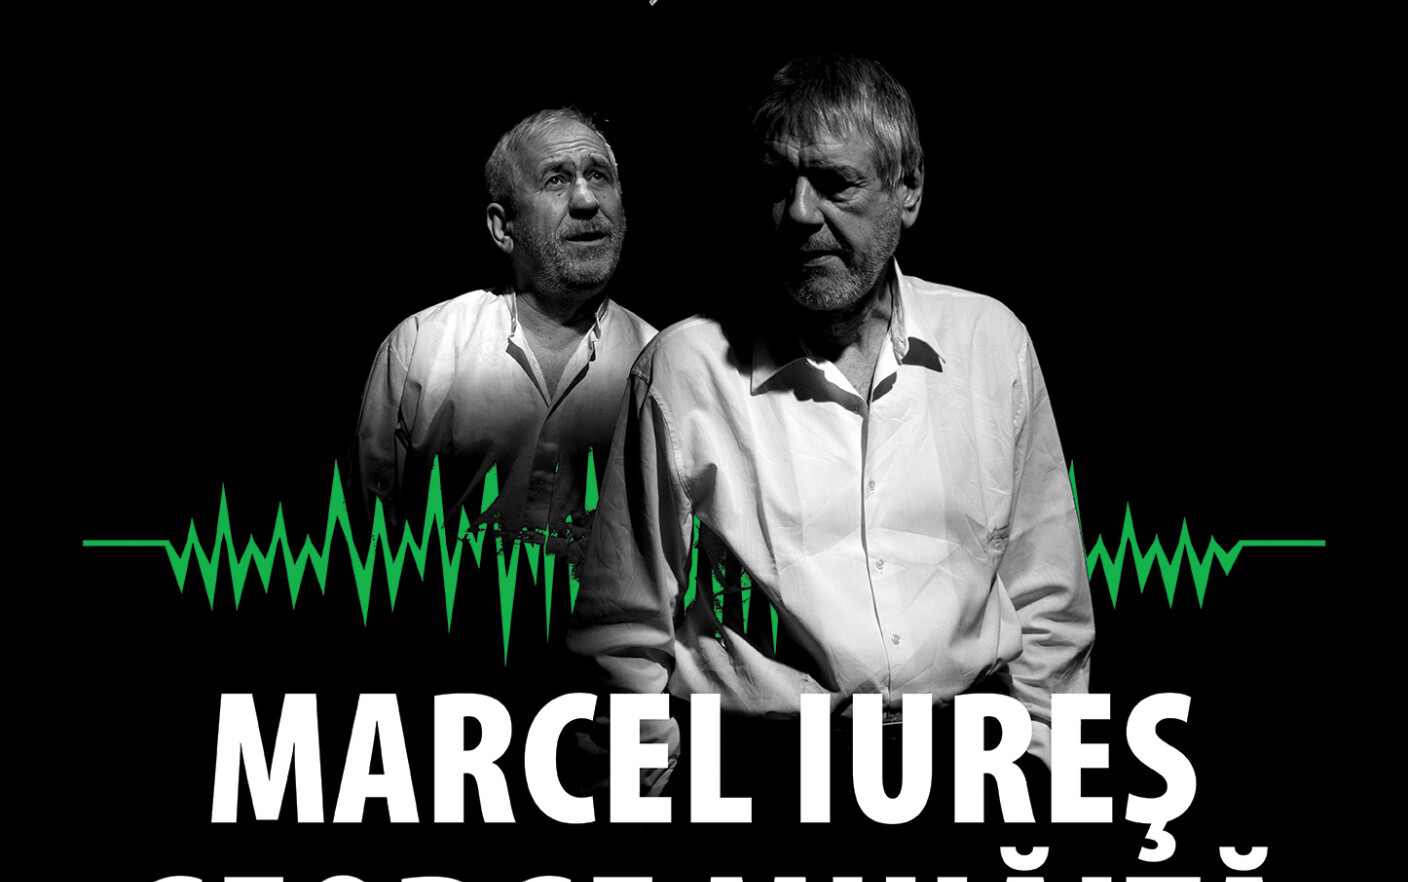 Marcel Iures si George Mihaita, intr-un spectacol dupa „Morometii” pe scena Nationalului clujean